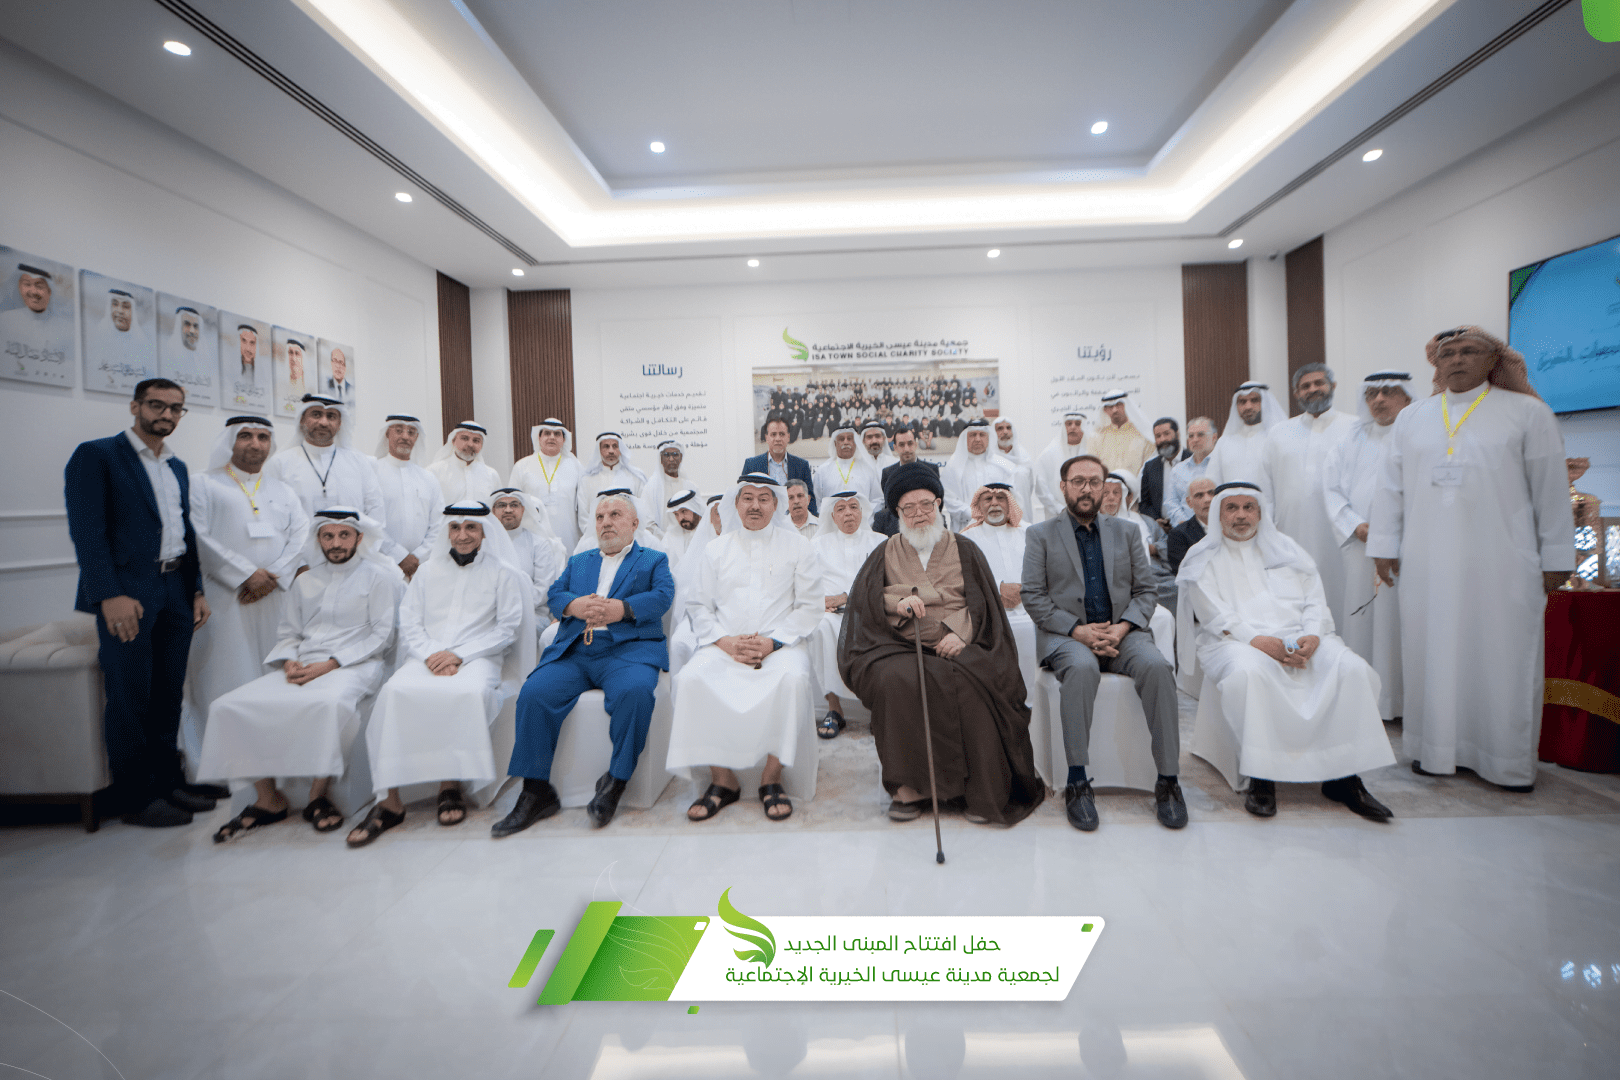 افتتاح المبنى الجديد لجمعية مدينة عيسى الخيرية الإجتماعية برعاية العلامة السيد عبدالله الغريفي